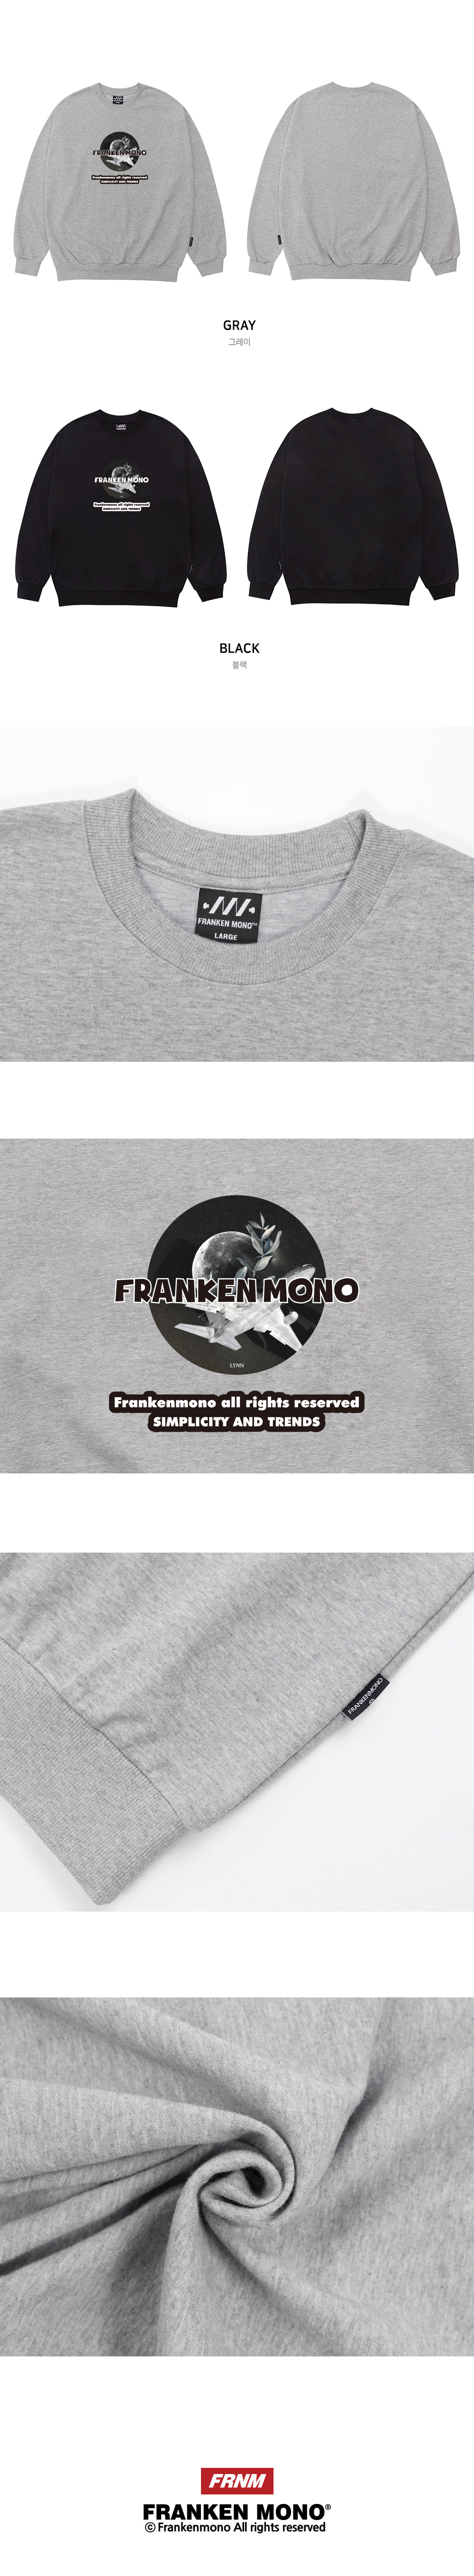 ����耳�紐⑤�� FRANKENMONO